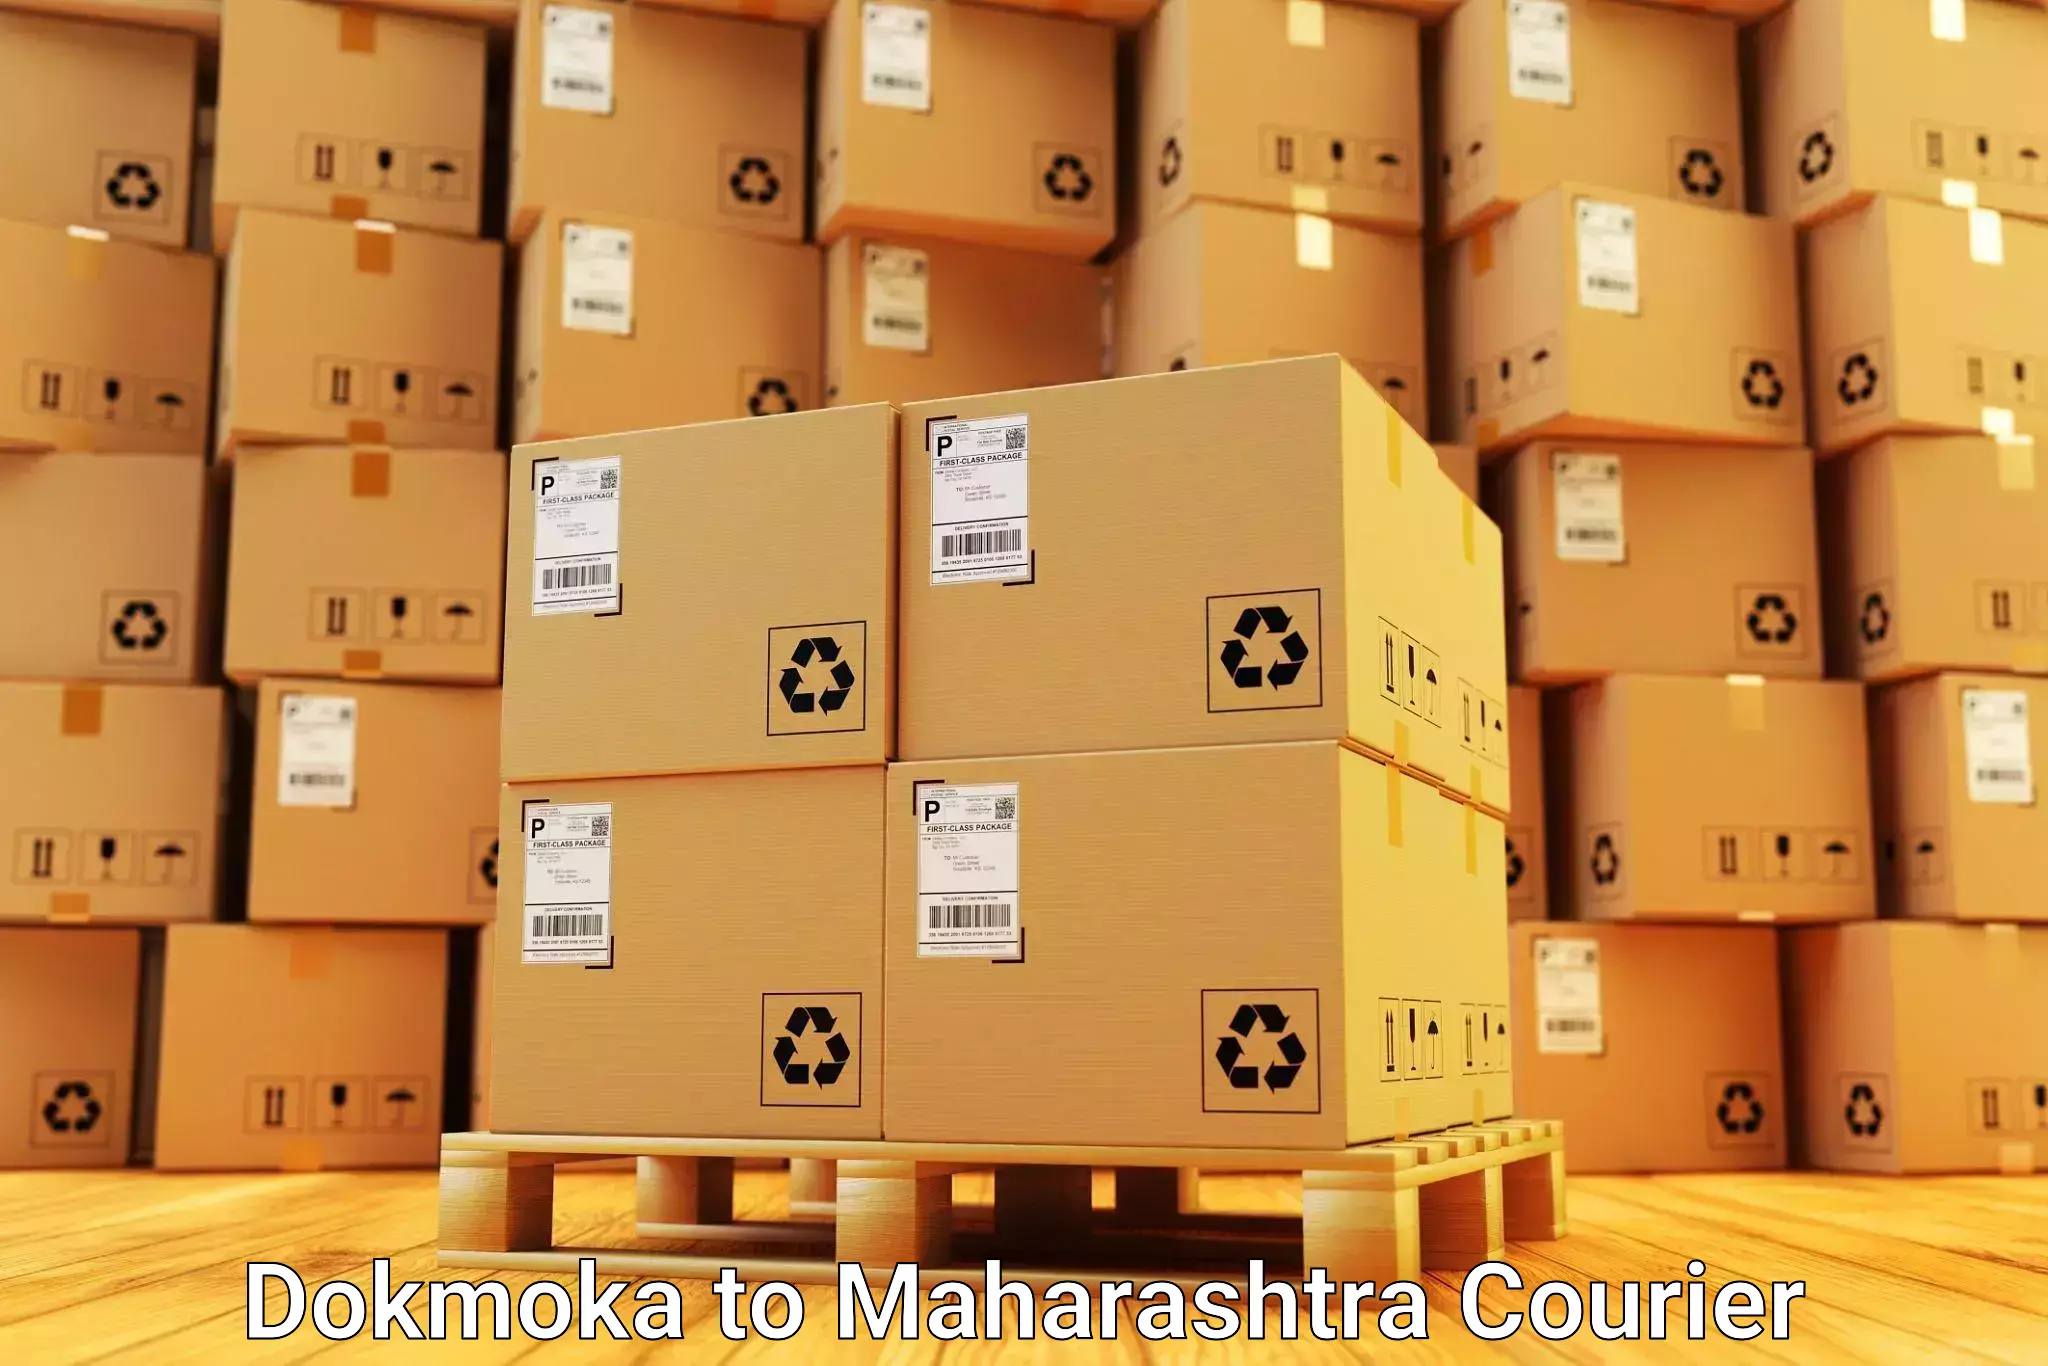 Moving and handling services Dokmoka to Nandurbar